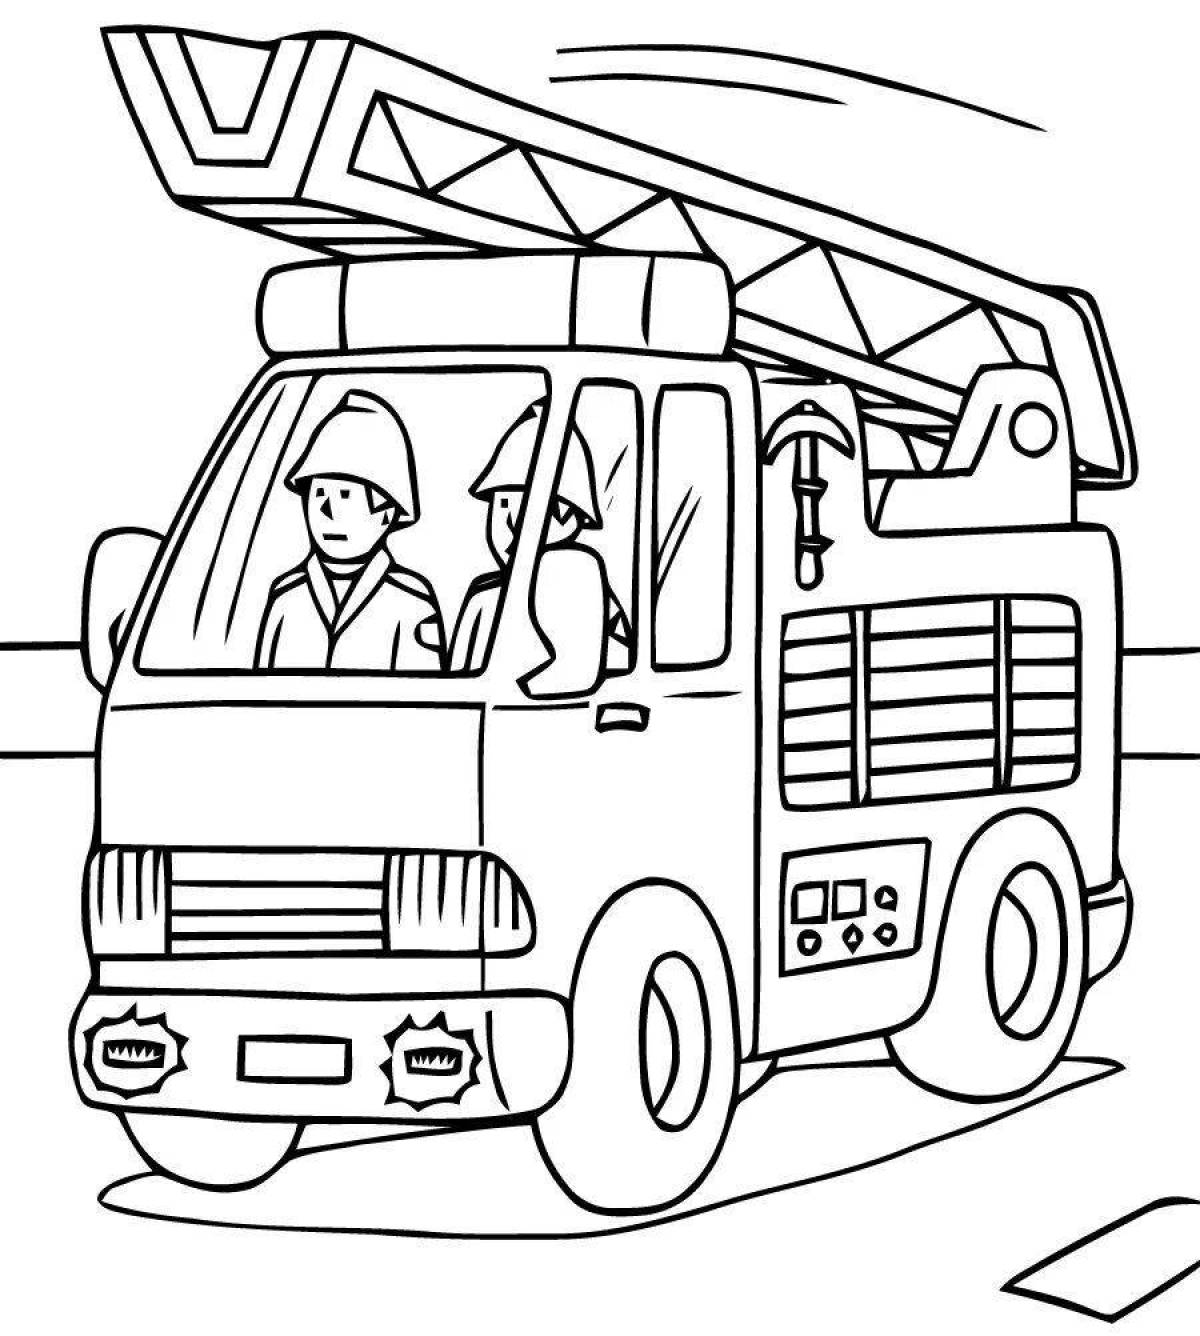 Веселая раскраска транспортной профессии для детей 5-6 лет